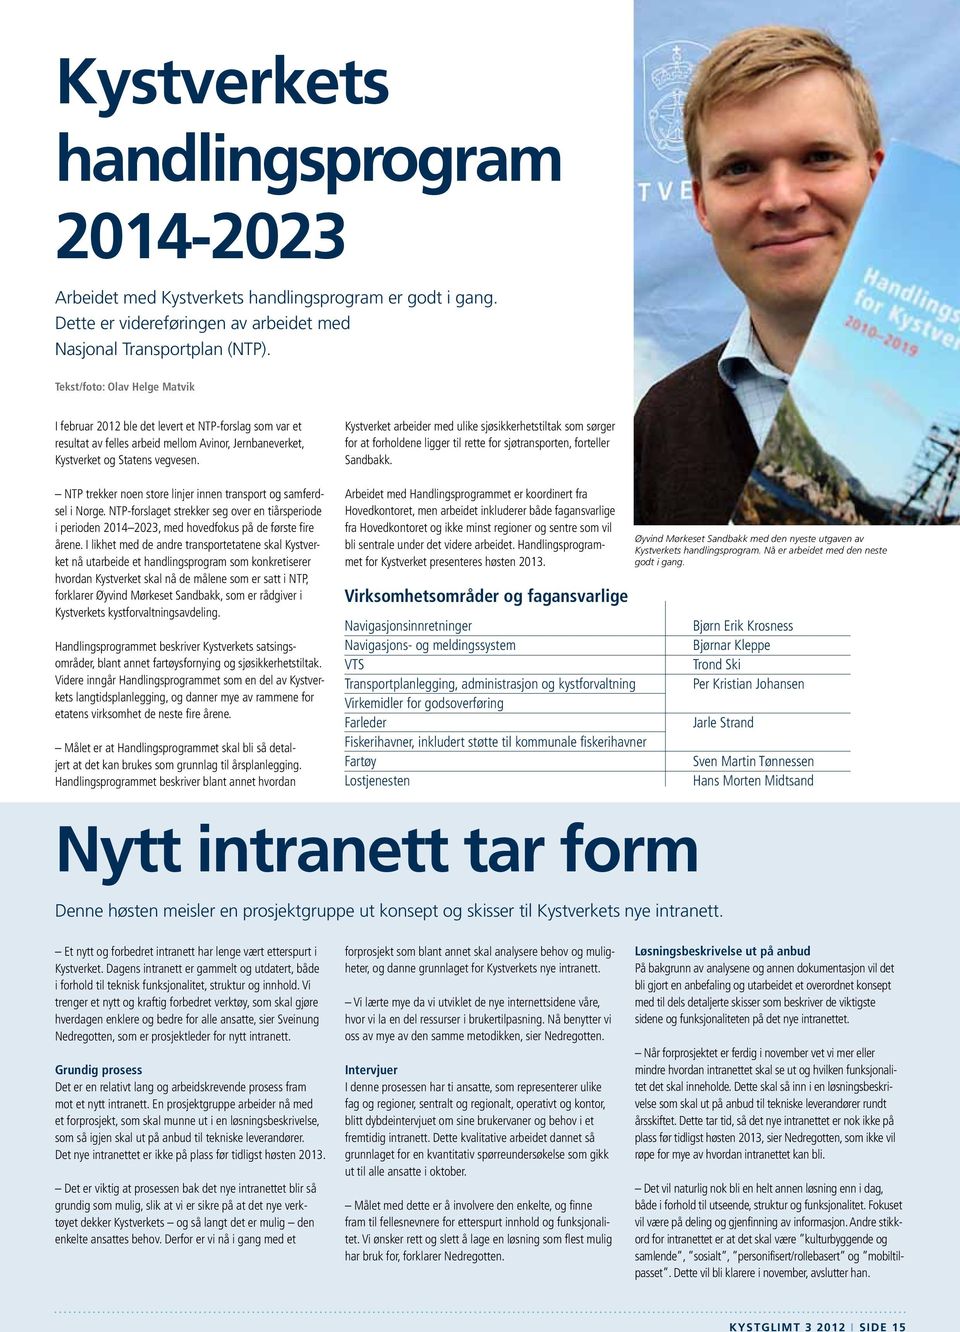 NTP trekker noen store linjer innen transport og samferdsel i Norge. NTP-forslaget strekker seg over en tiårsperiode i perioden 2014 2023, med hovedfokus på de første fire årene.